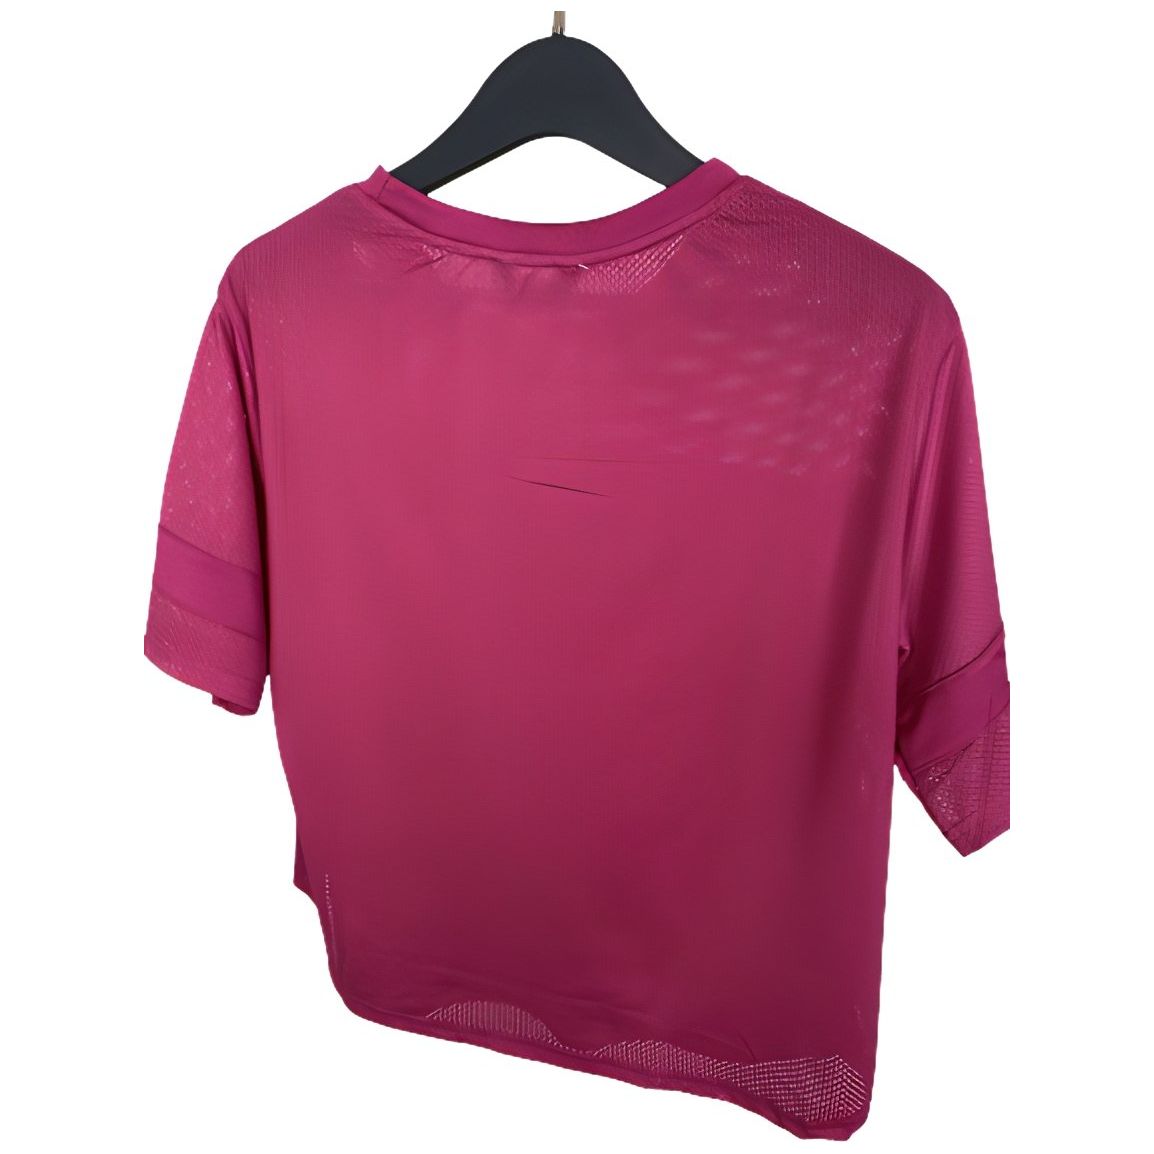 Bebe-Bebe Sport Women's Raspberry Mesh T-Shirt (Medium Size) - Brandat Outlet